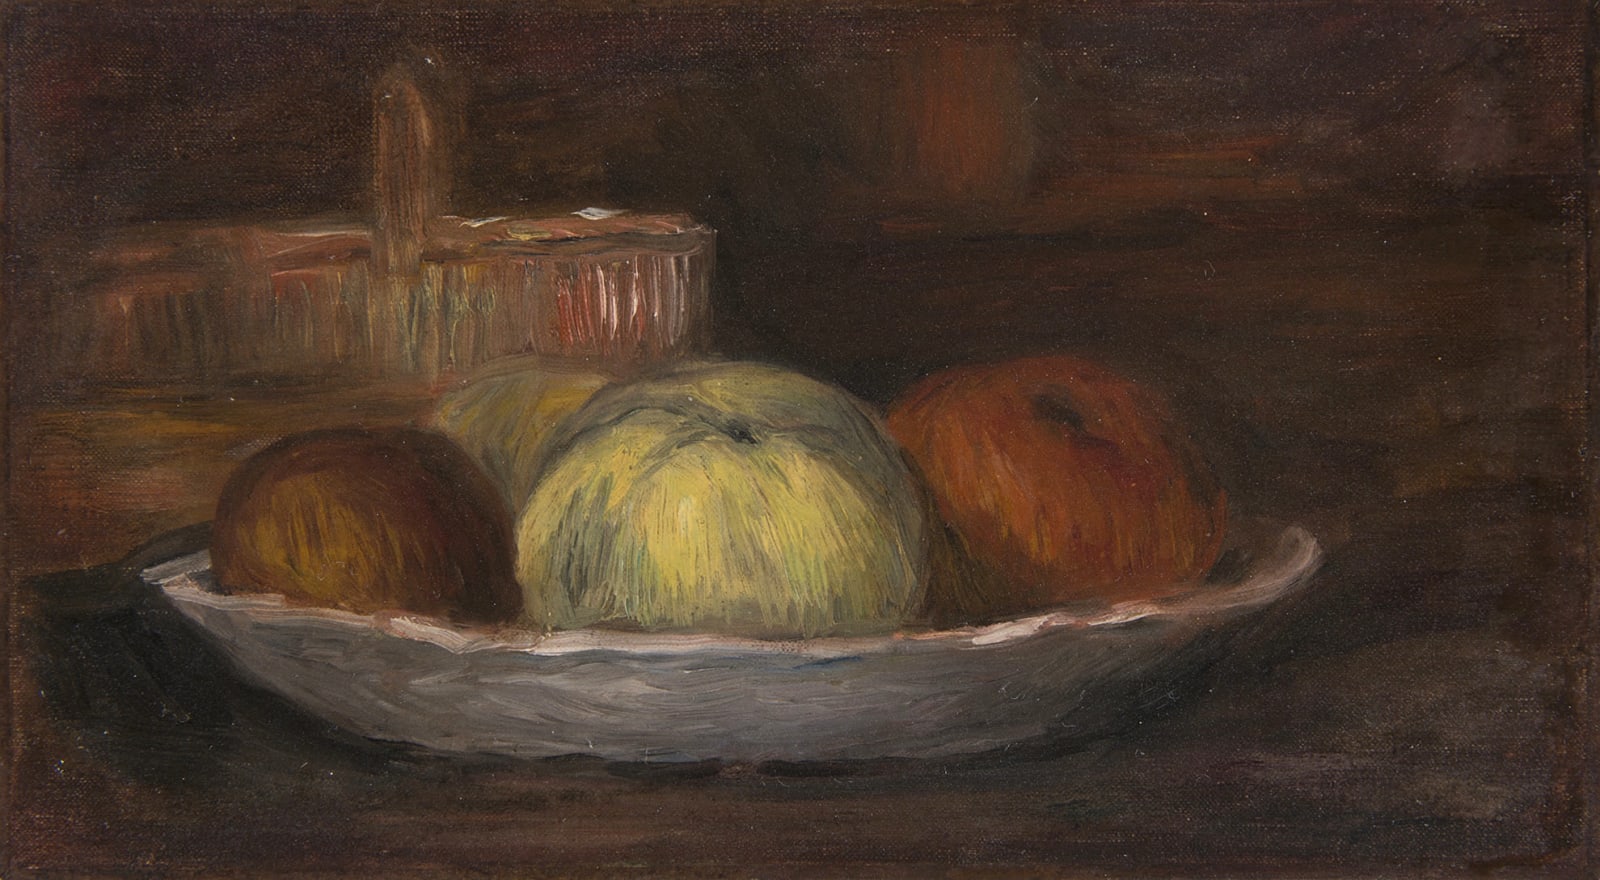 PIERRE-AUGUSTE RENOIR, Pommes dans un plat et panier, circa 1900